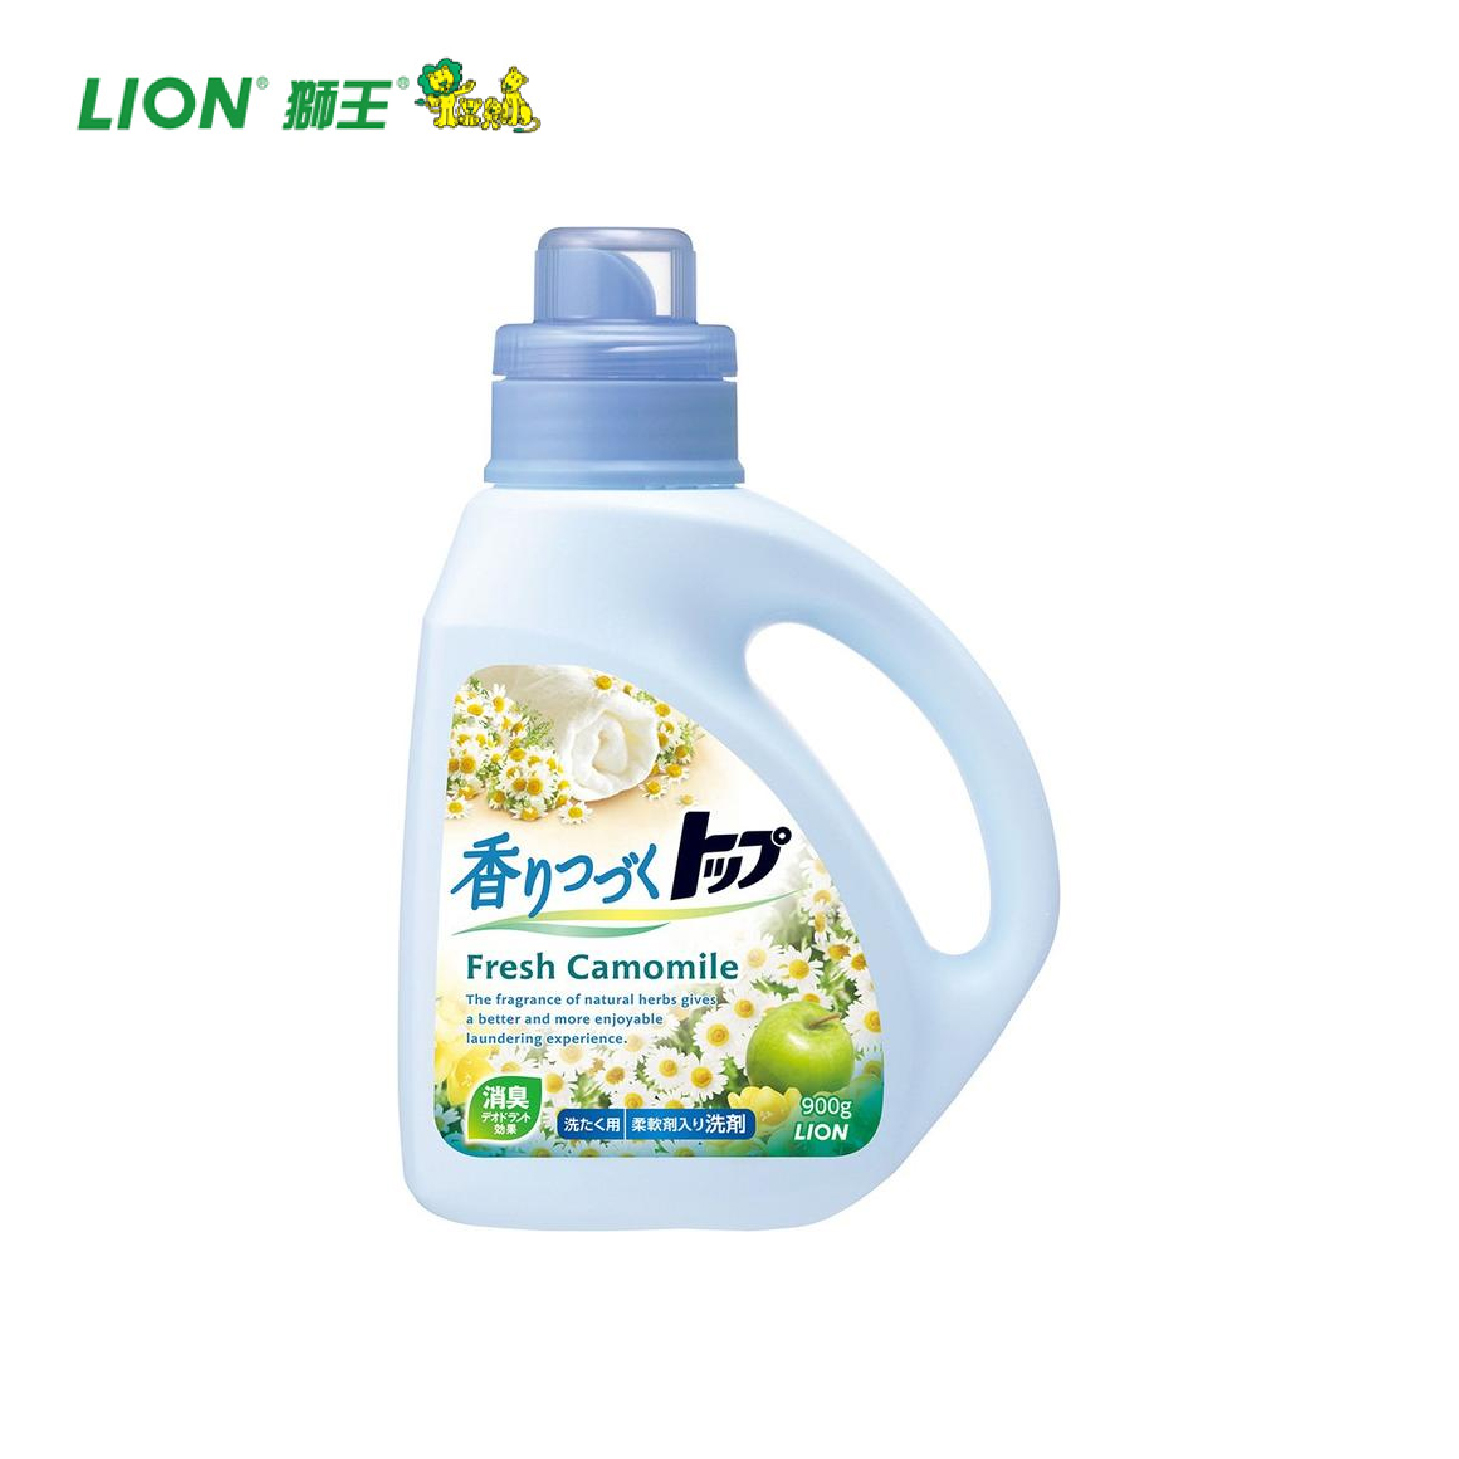 LION狮王 | TOP顶级 | 含柔顺剂洗衣液 | 菊花香 | 900g